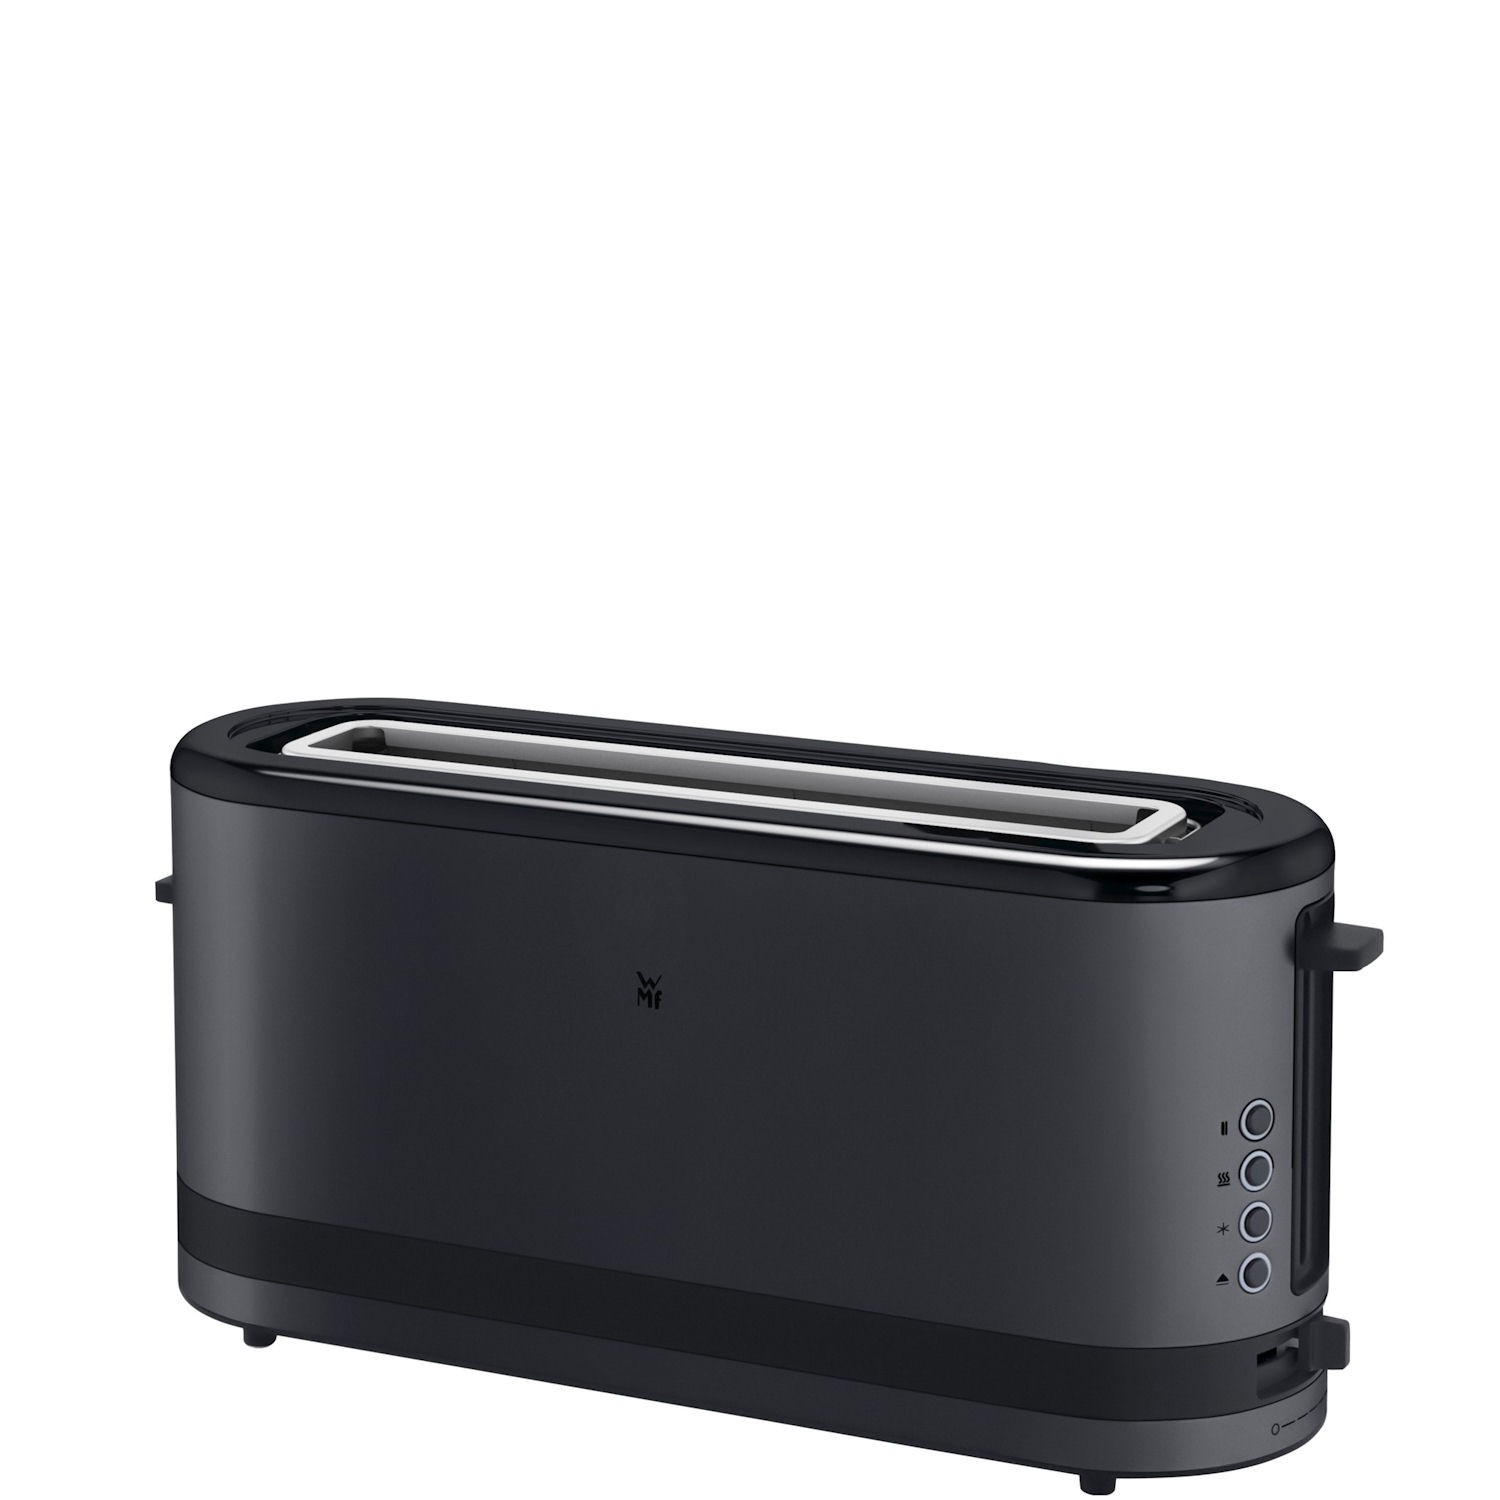 WMF KITCHENminis 1-slice toaster